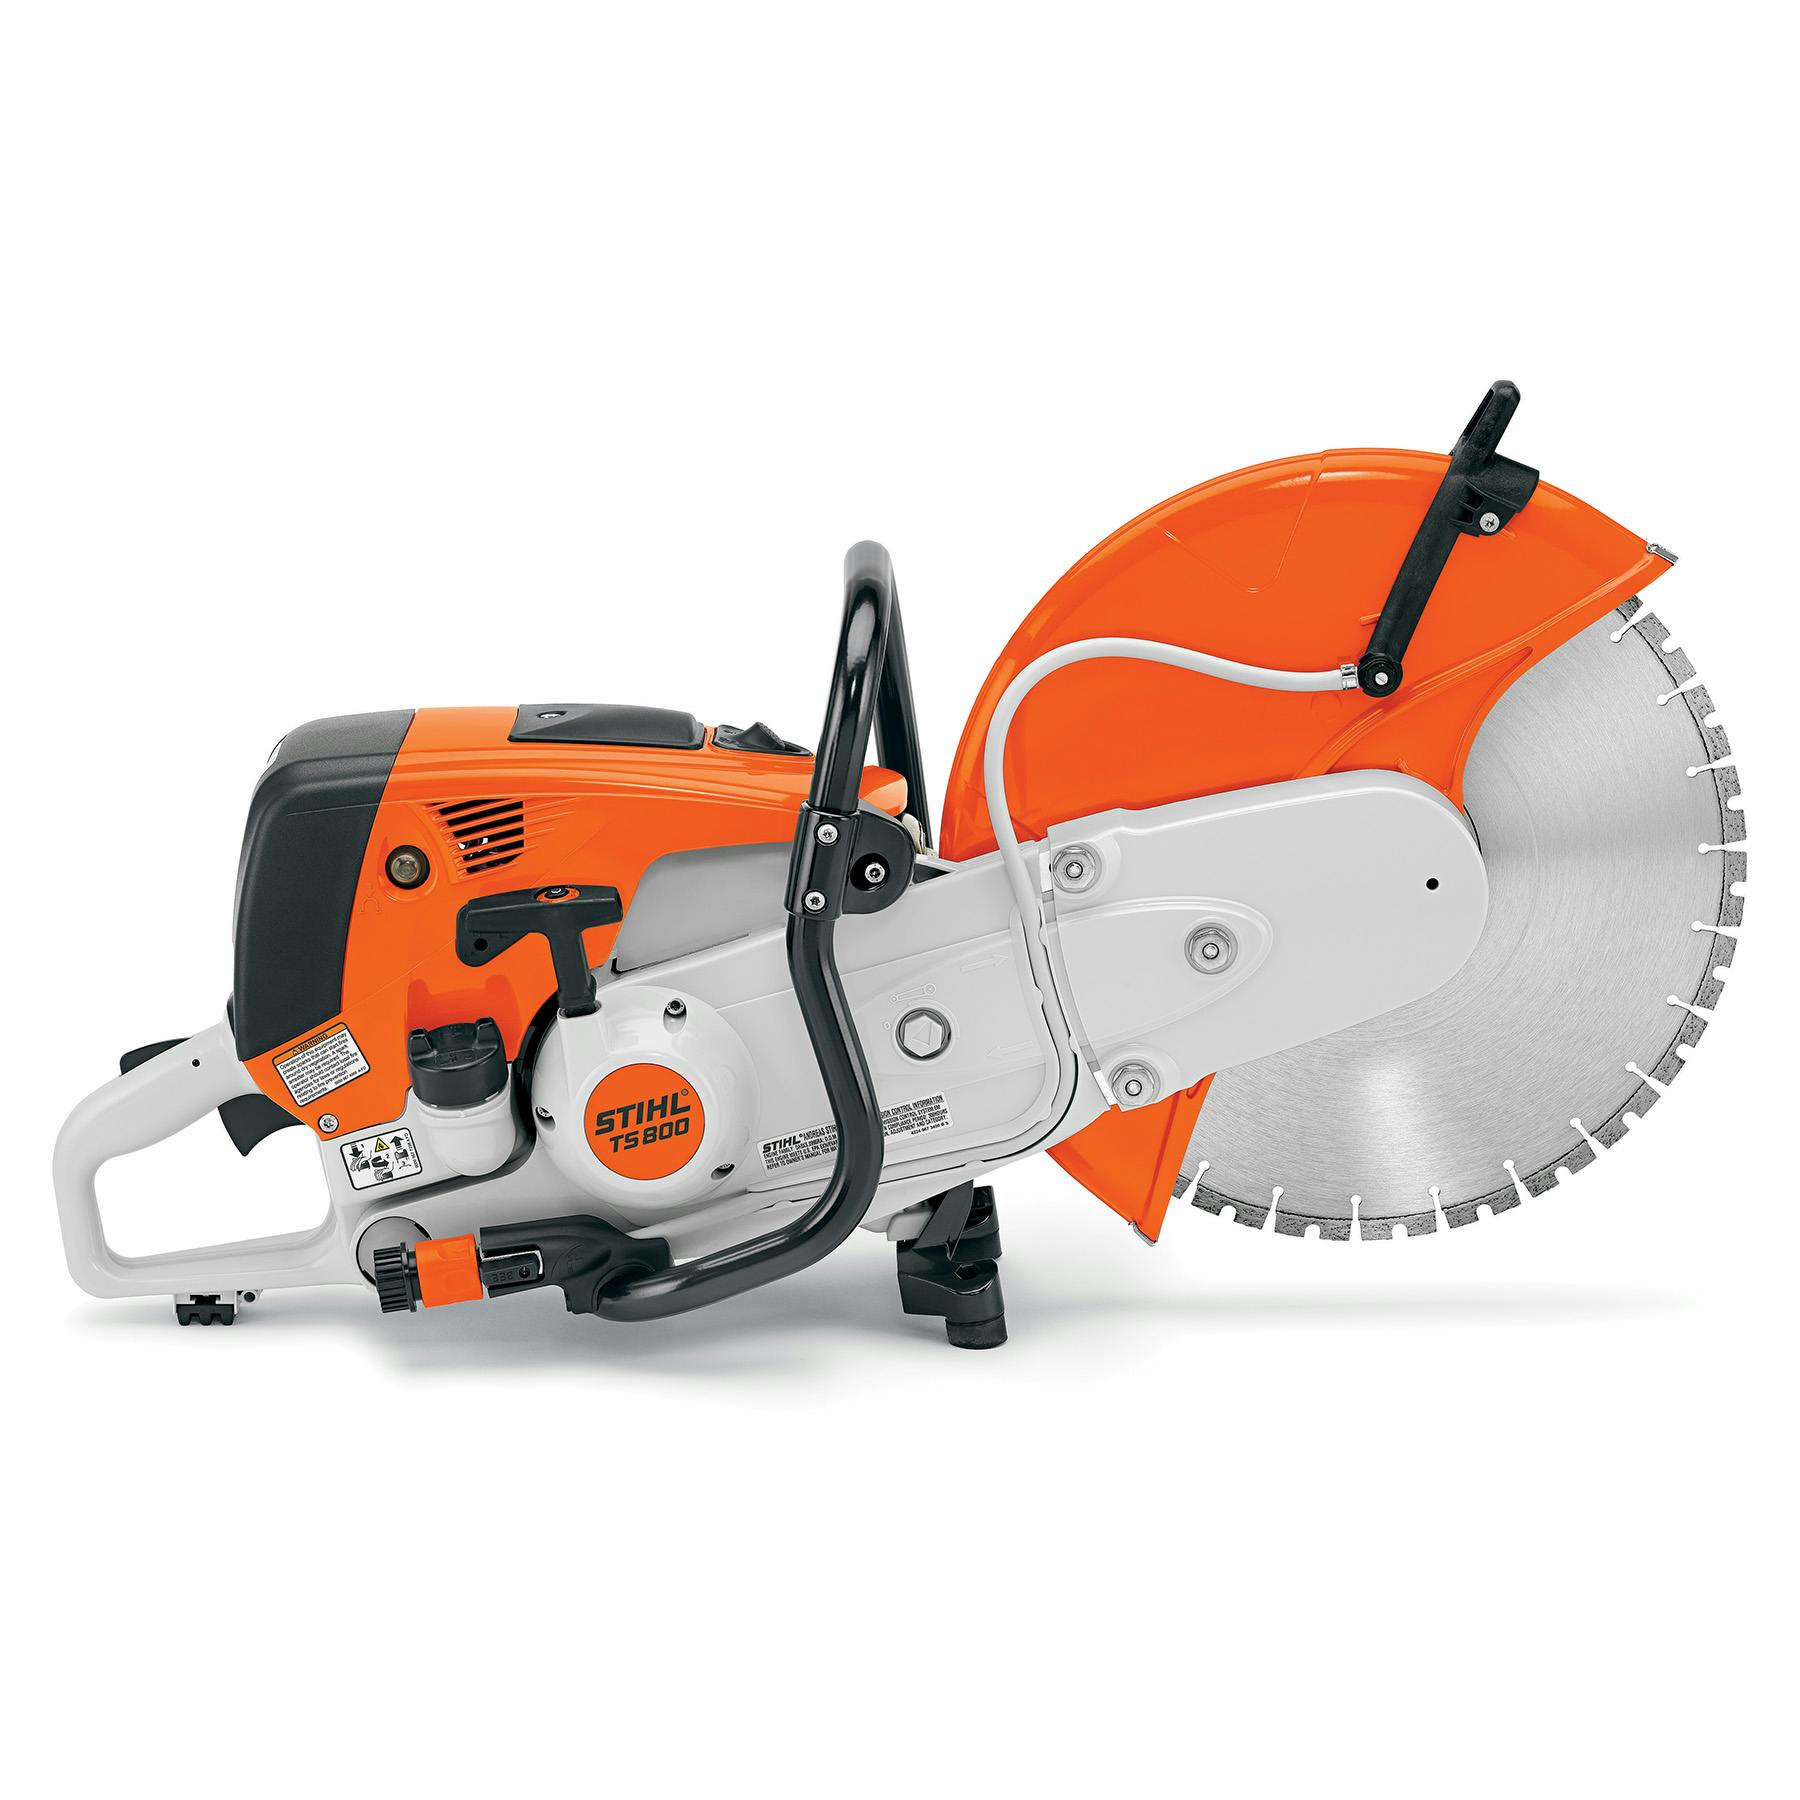 GENUINE NEW STIHL Concrete Cut-Off Saw Machine Cutquik TS 420 